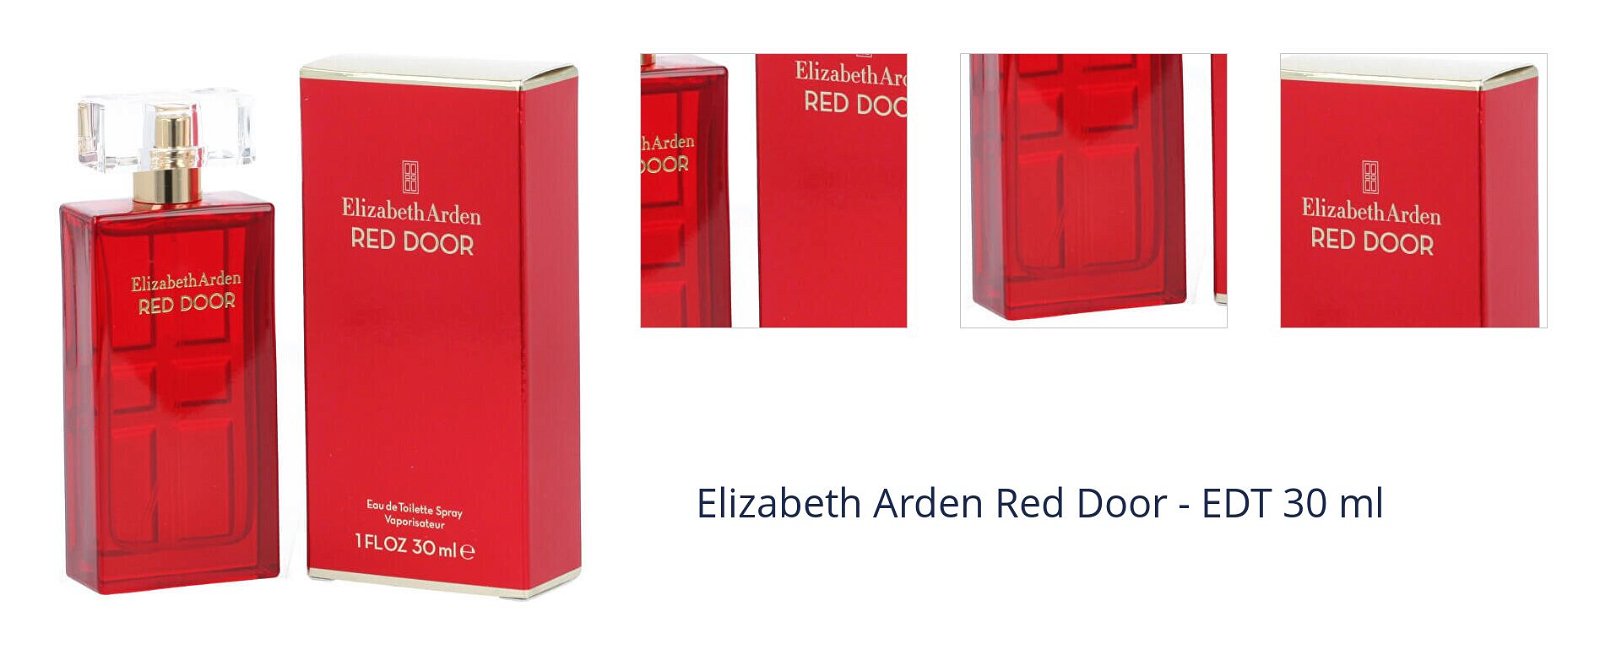 Elizabeth Arden Red Door - EDT 30 ml 1